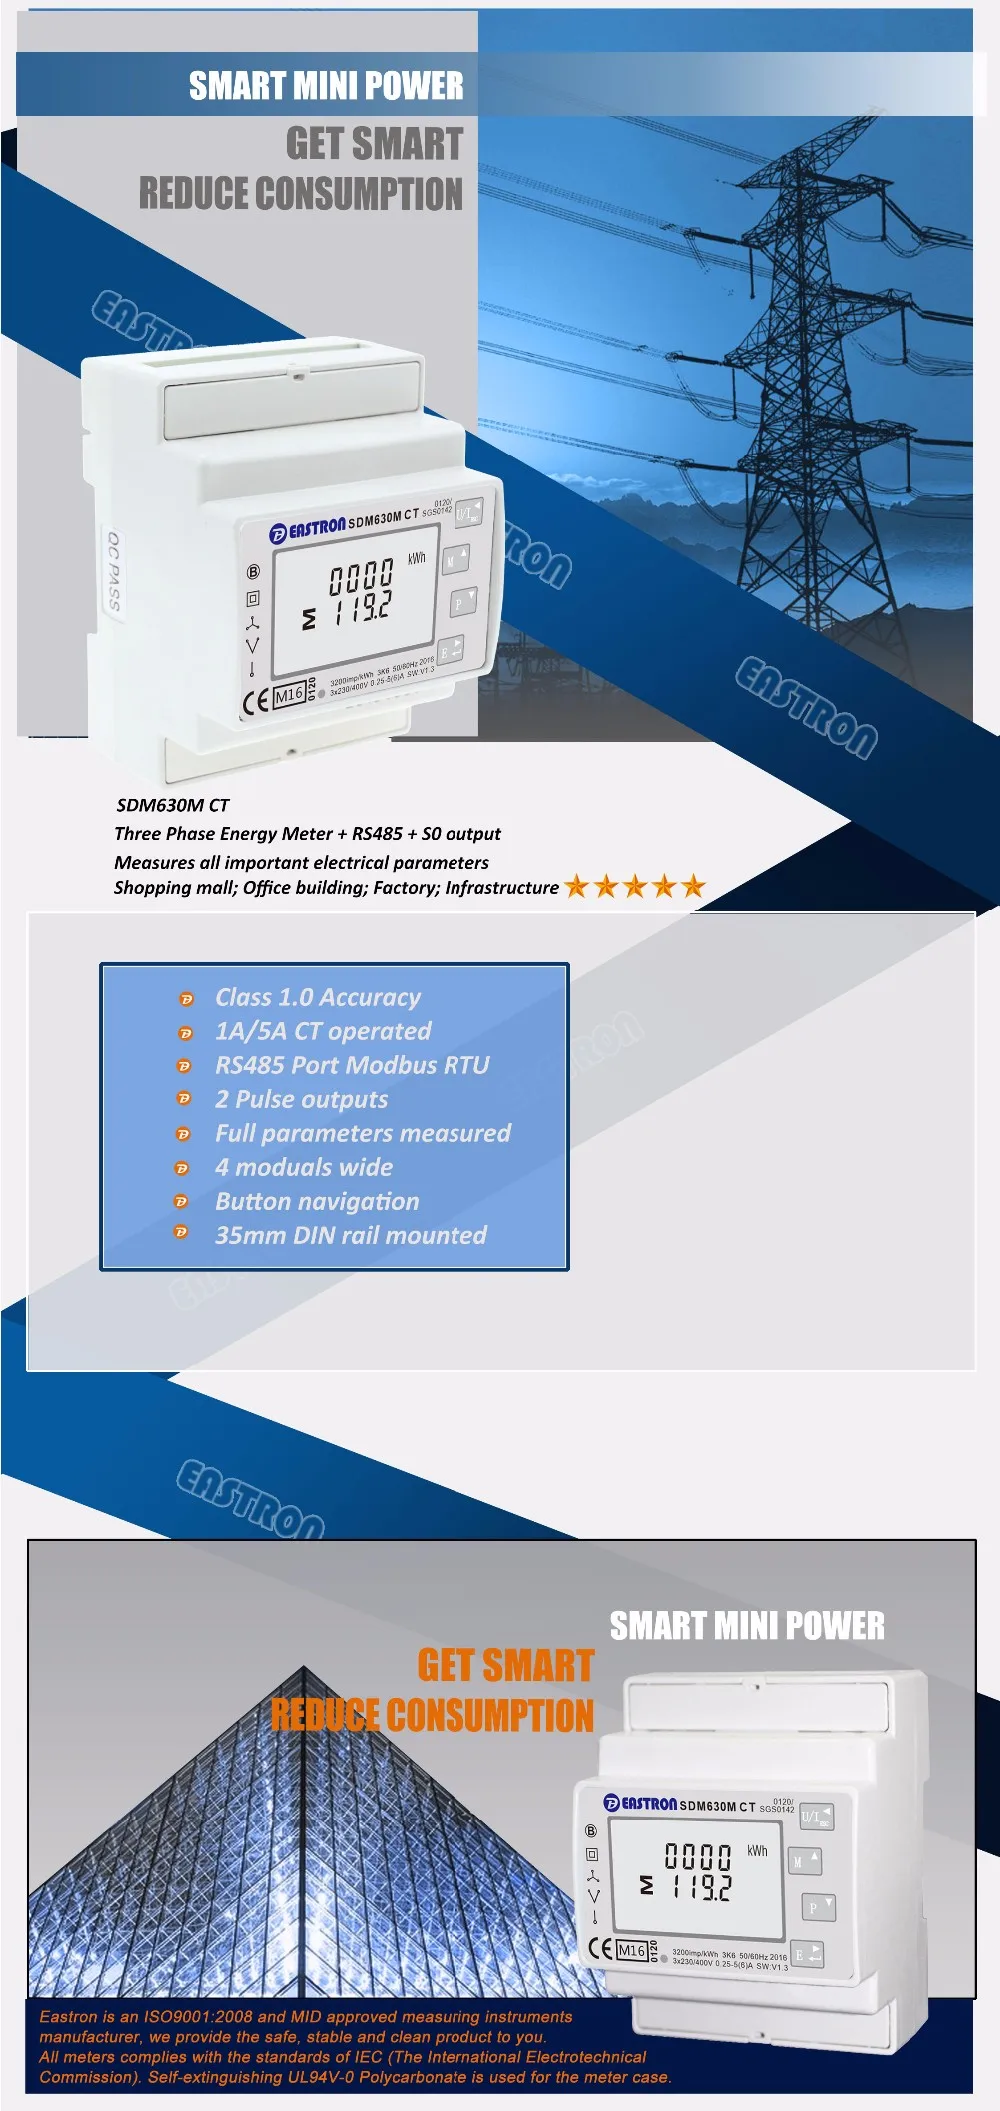 SDM630MCT с 3 шт ESCT-T24 150A/5A CTs, многофункциональный анализатор мощности, ESCT-T24 150A/5A трансформатор тока